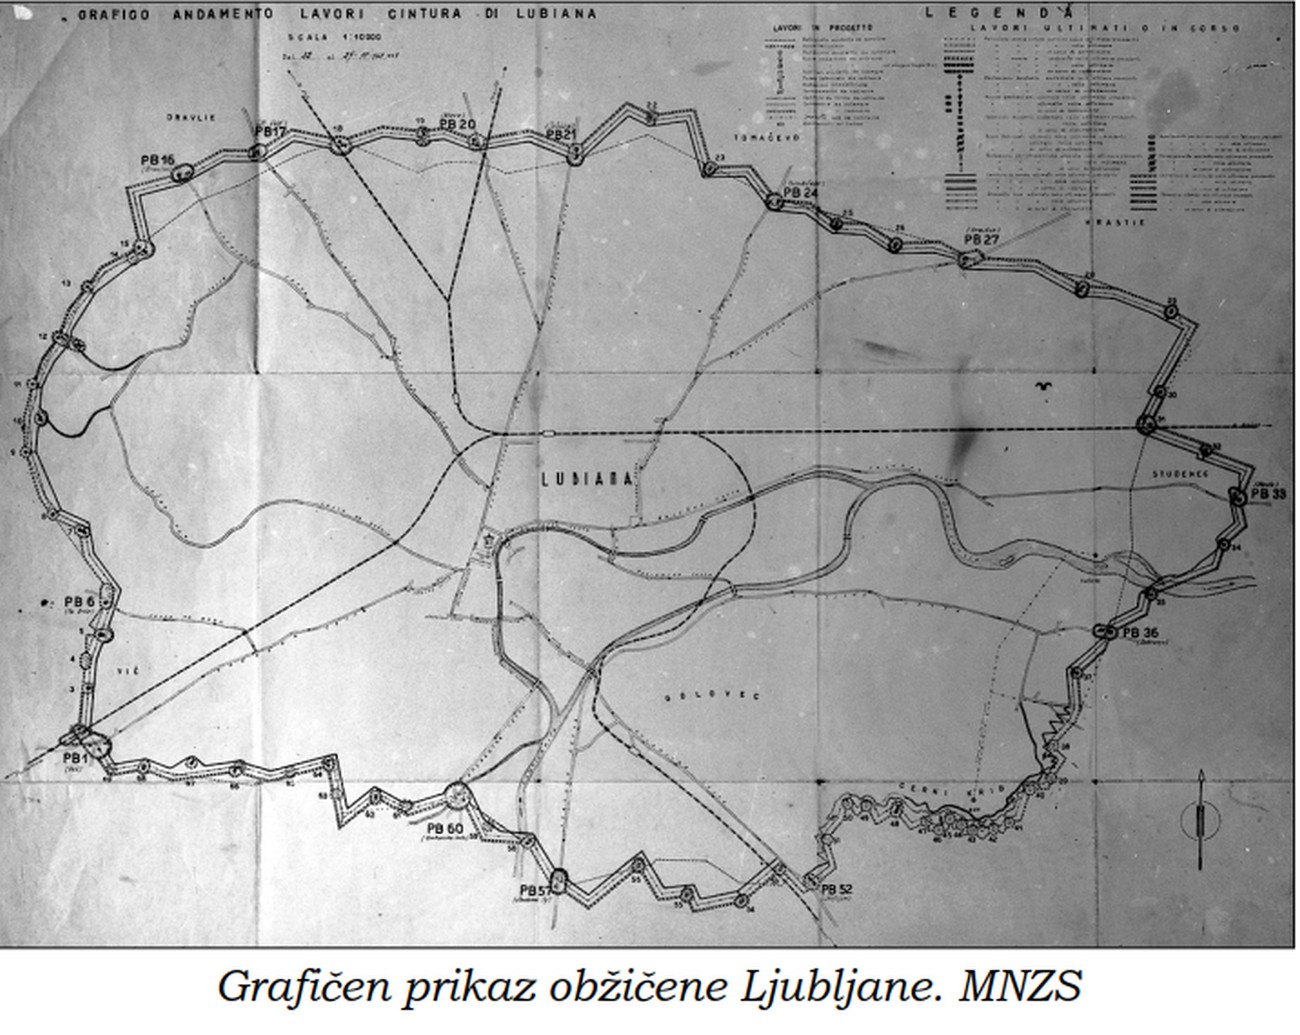 Zemljevid utrjenega pasu okoli Ljubljane. Celoten obmejni pas je bil dolg okoli 30 km, visok okoli 2 metra in širok 5–8 m. Skupaj s telefonsko in električno napeljavo, reflektorskimi postajami za osvetlitev meje in krožno stezo na notranji strani pasu je bila utrjena črta široka ok. 80 m. Januarja 1943 je mejo stražilo okoli 2500 vojakov, 500 karabinjerjev, agentov javne varnosti in kvesturinov za pregledovanje ljudi na cestnih blokih. MNZS.